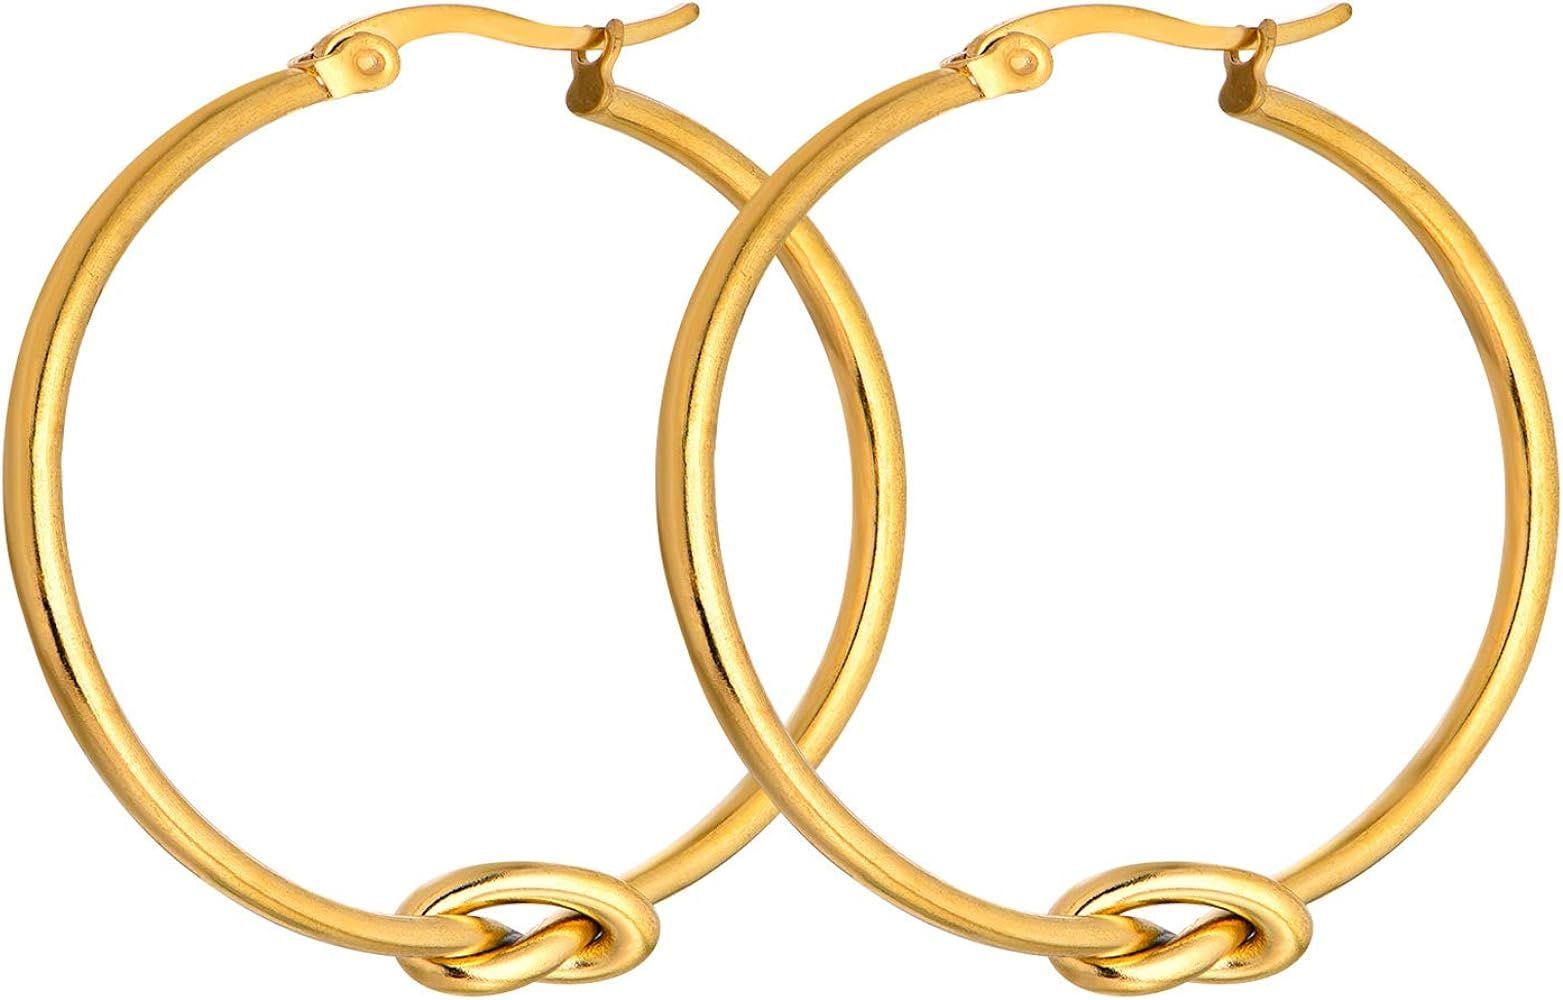 YL Jewelry Gold Hoop Earrings Stainless Steel Dangle Earrings Round Knot Earrings for Women 25mm ... | Amazon (US)